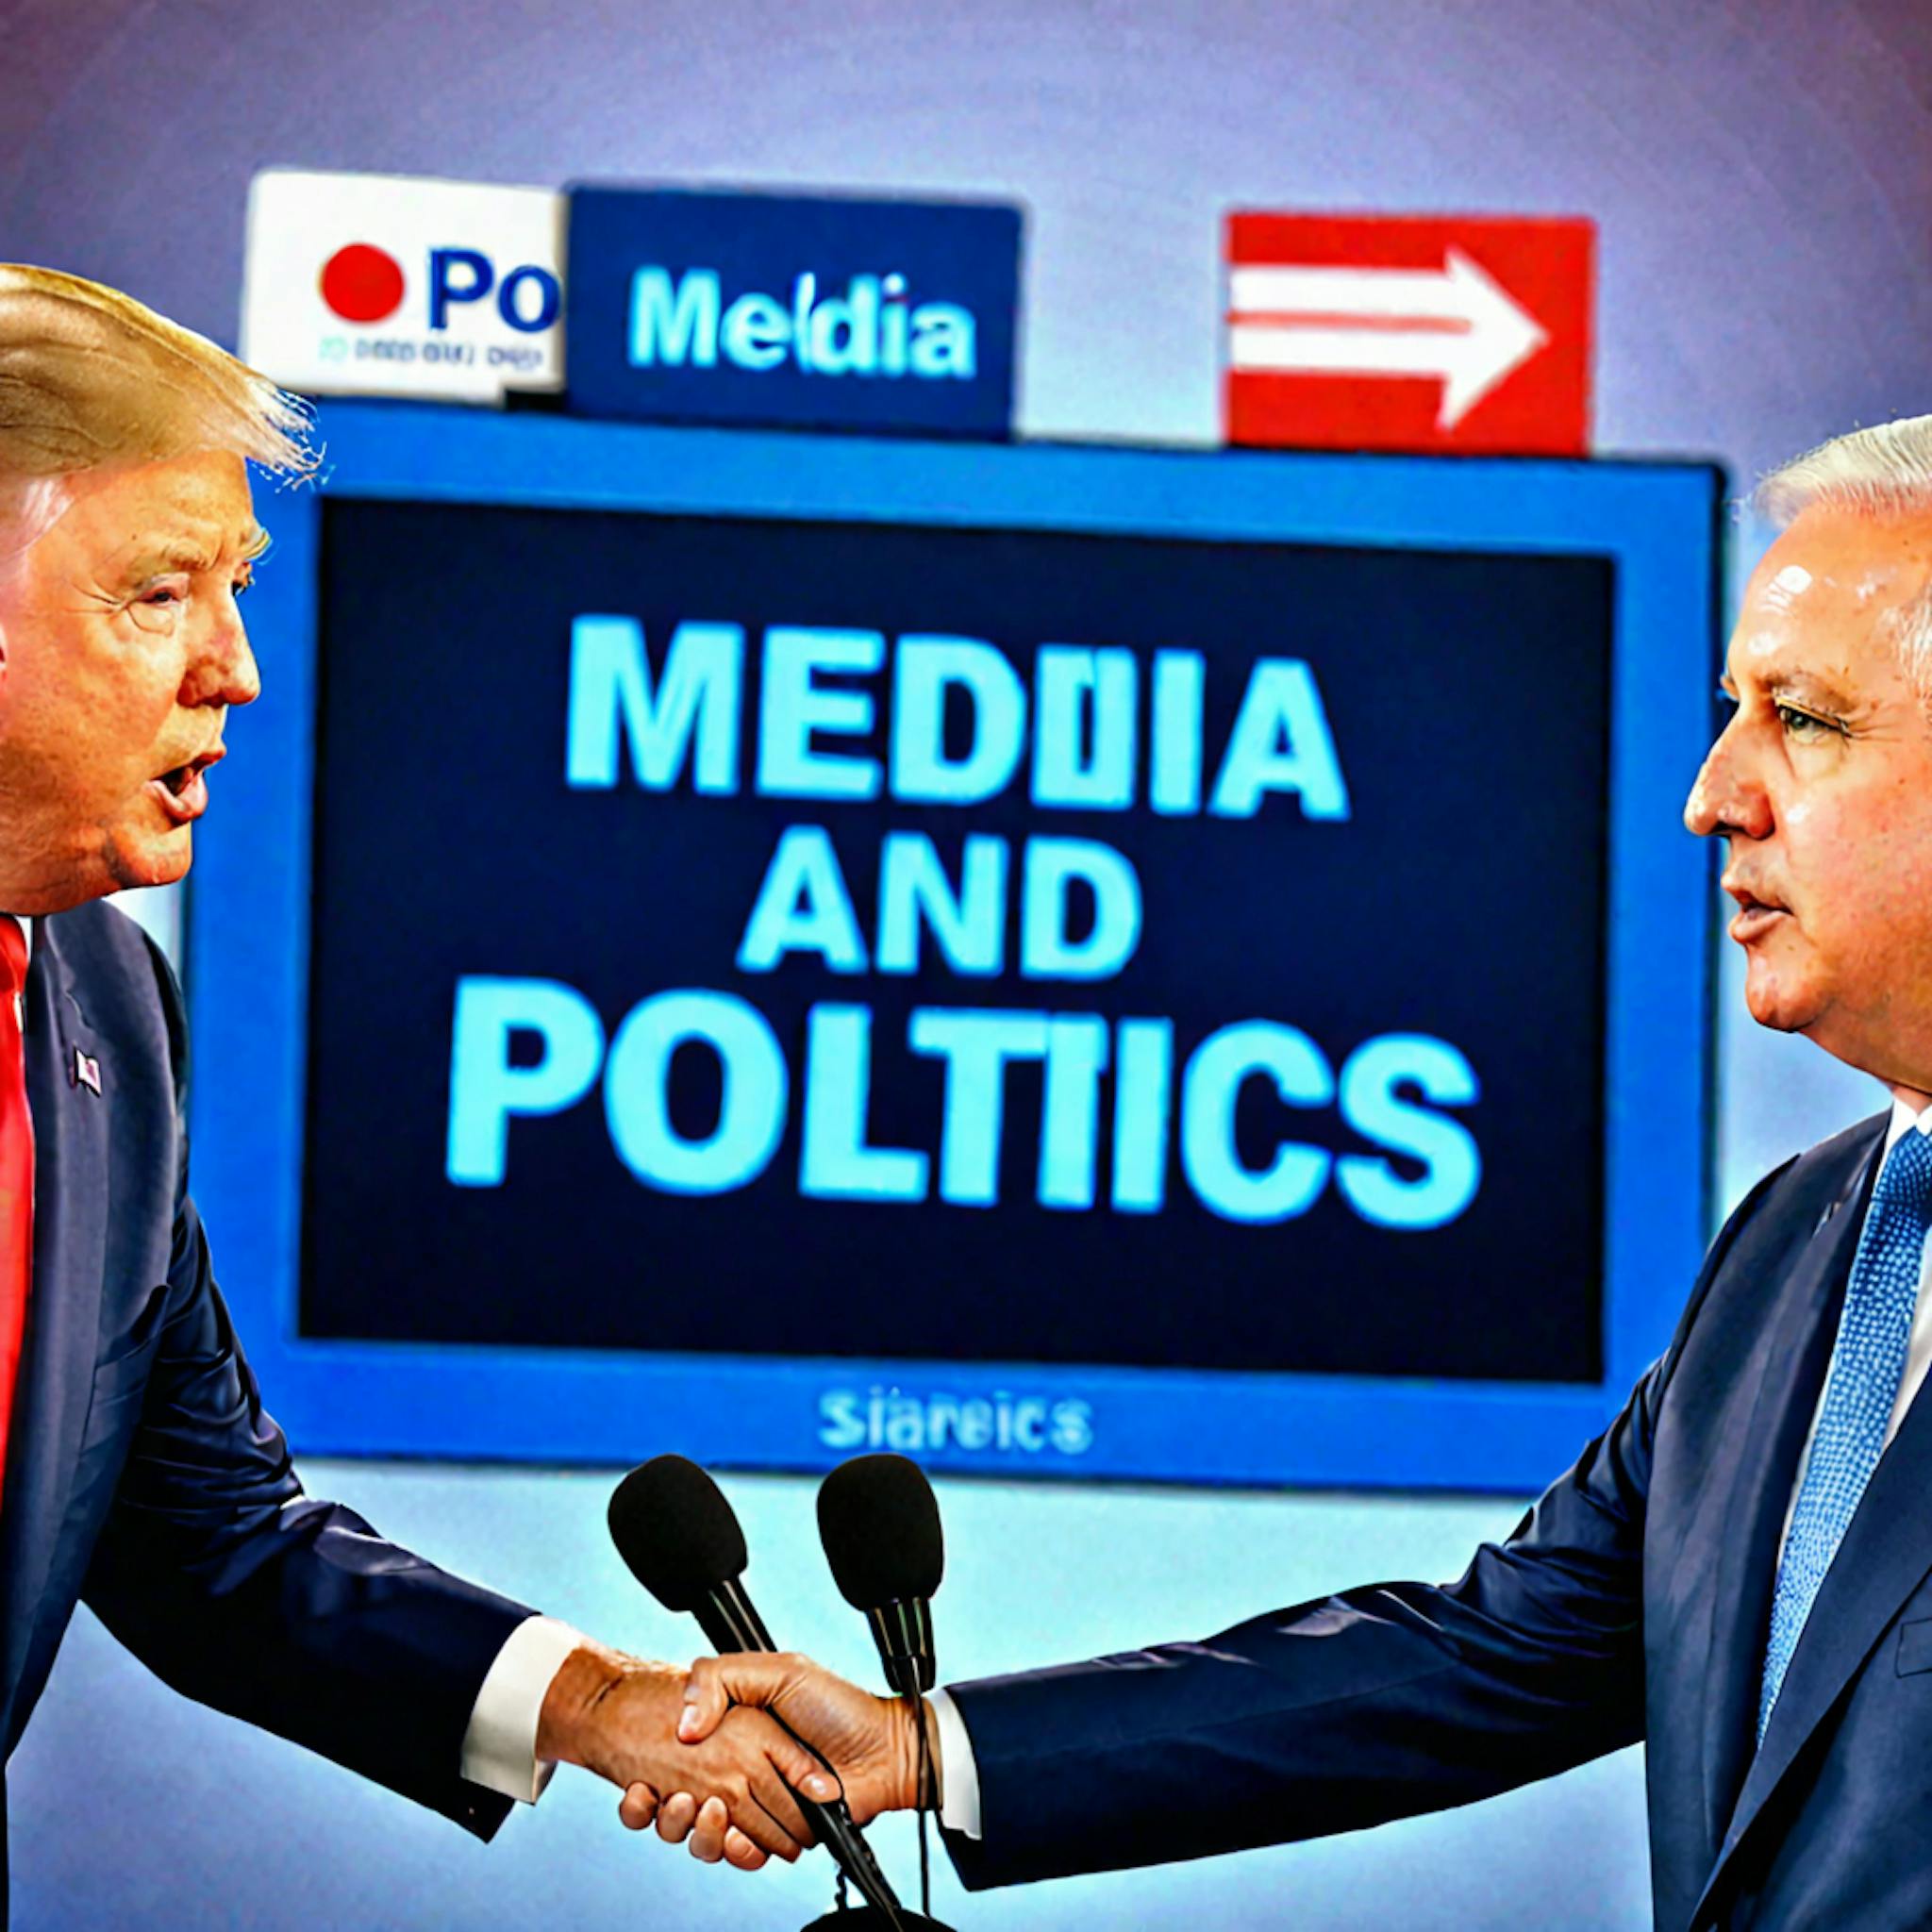 featured image - Postura política burda multilingüe Clasificación de los medios: limitaciones y declaración de ética